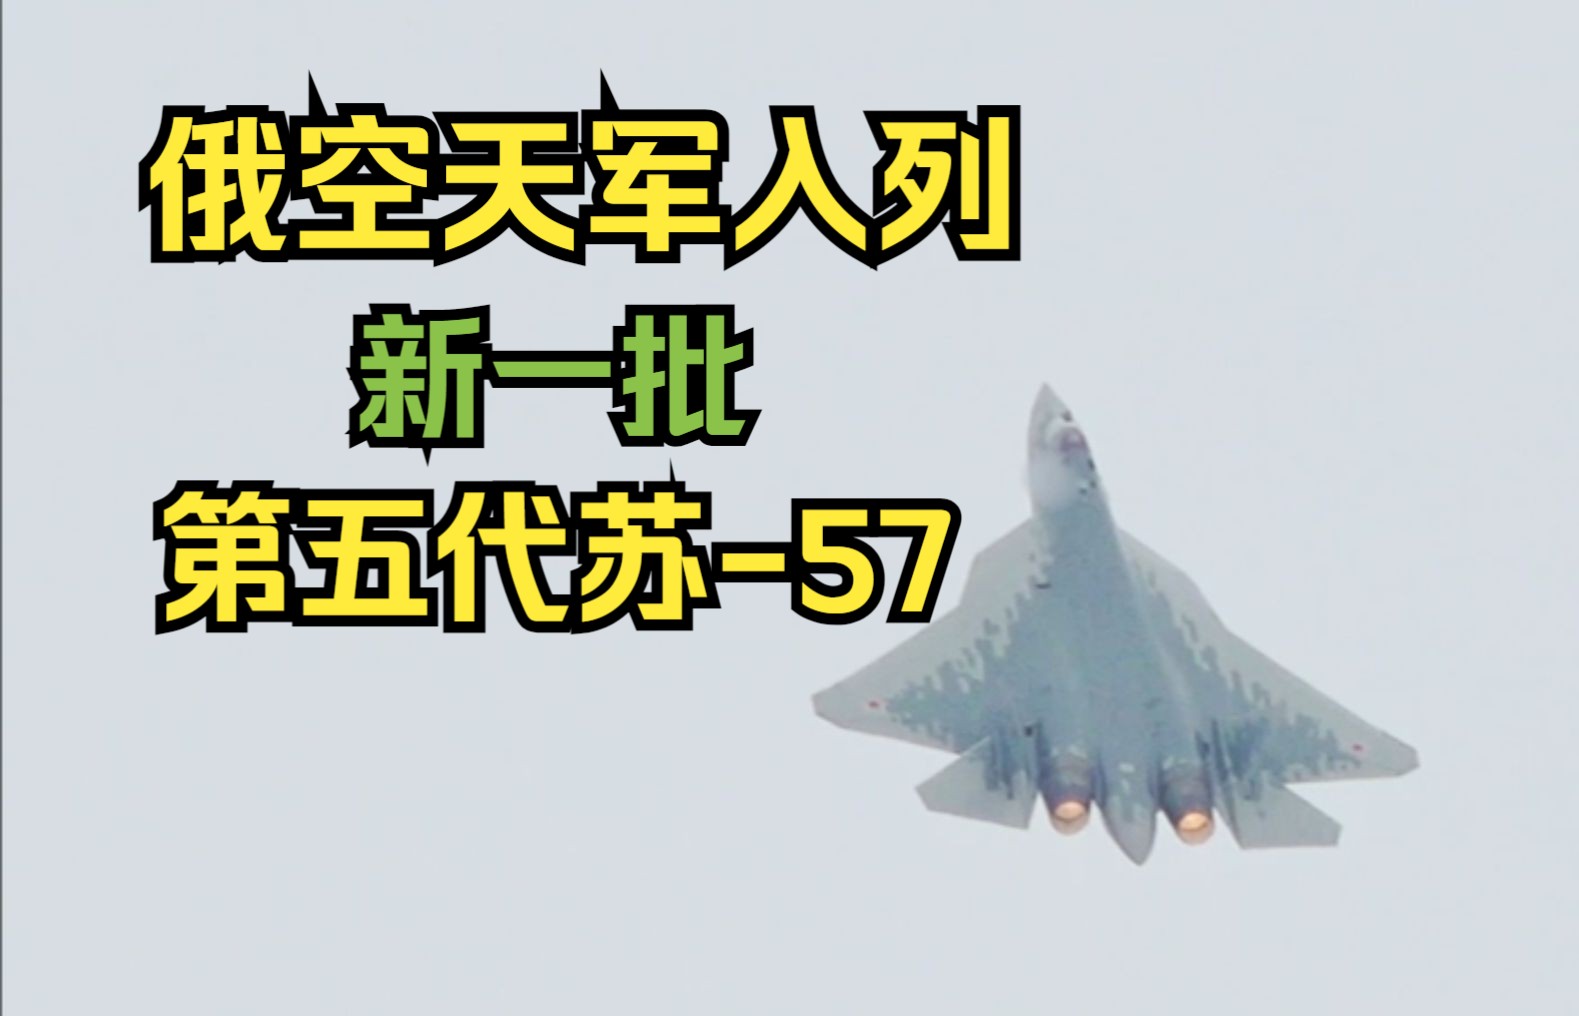 新一批苏-57战斗机已交付国防部